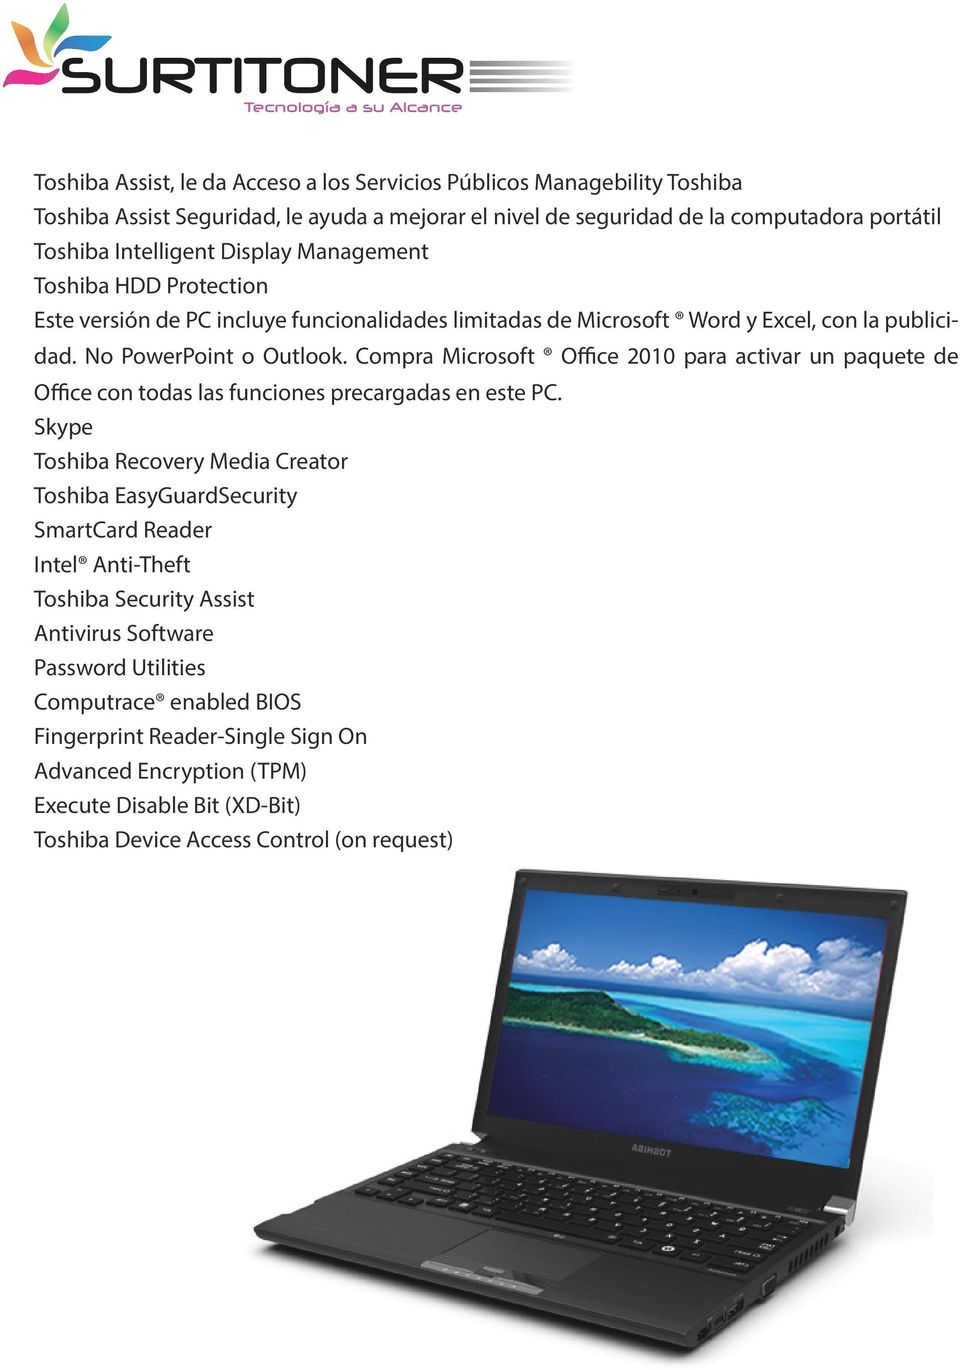 Compra Microsoft Office 2010 para activar un paquete de Office con todas las funciones precargadas en este PC.